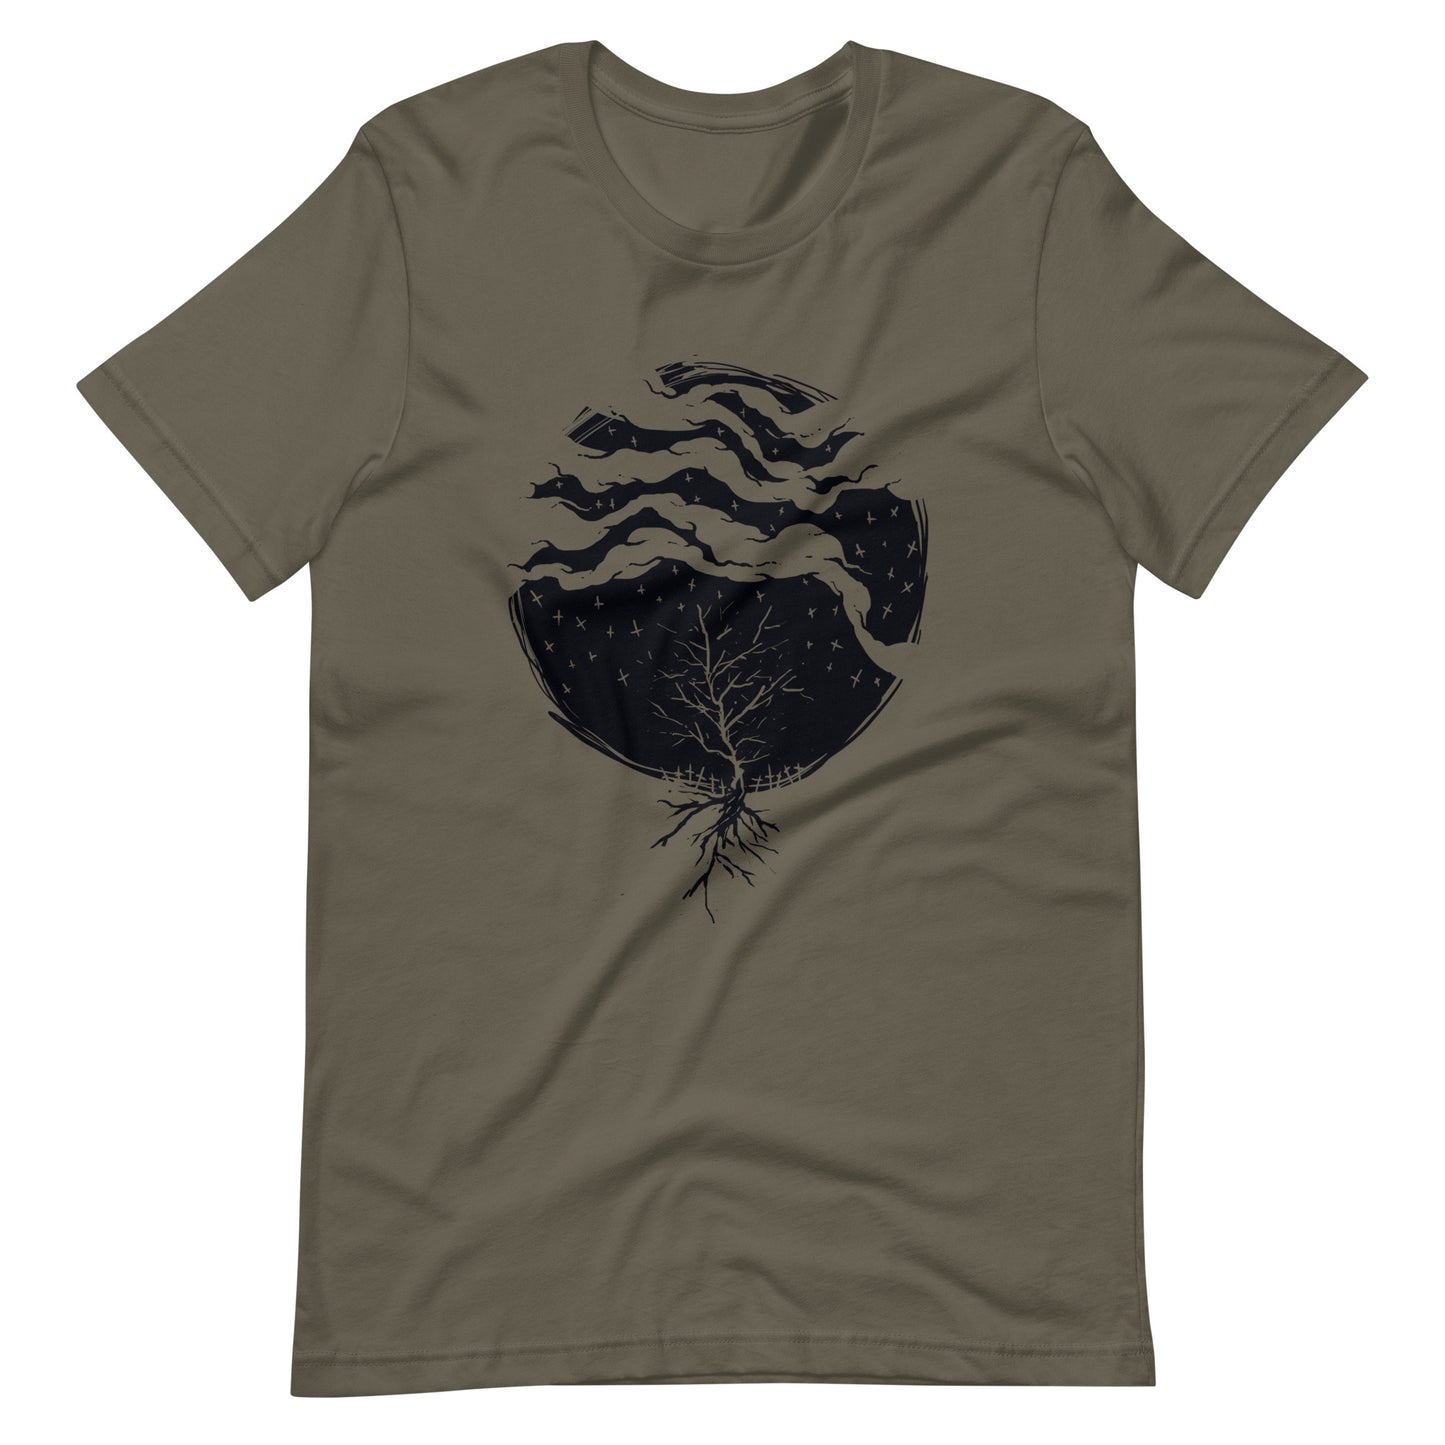 Dead Rain Black - Men's t-shirt - Army Front